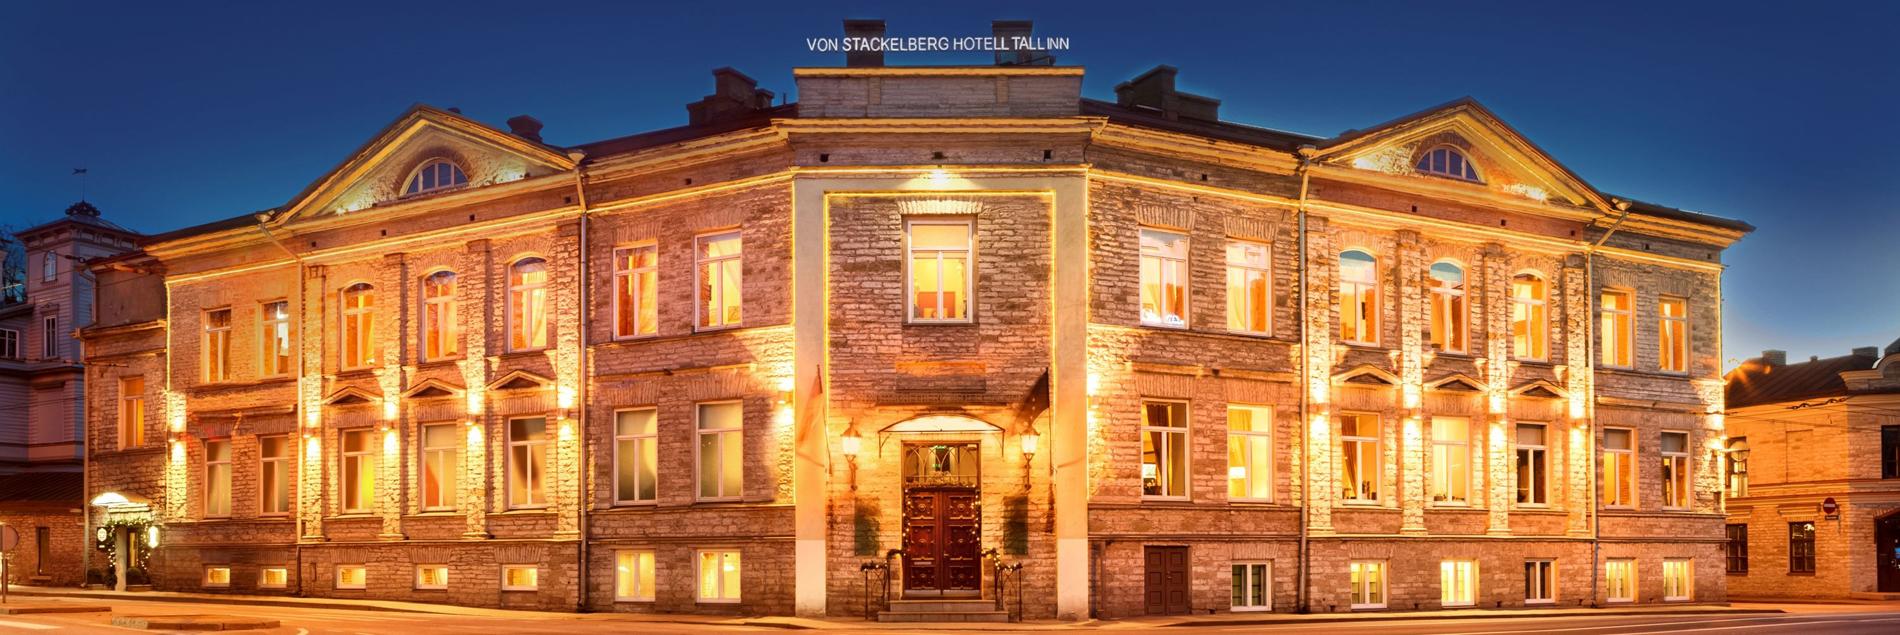 Von Stackelberg Hotel Tallinn